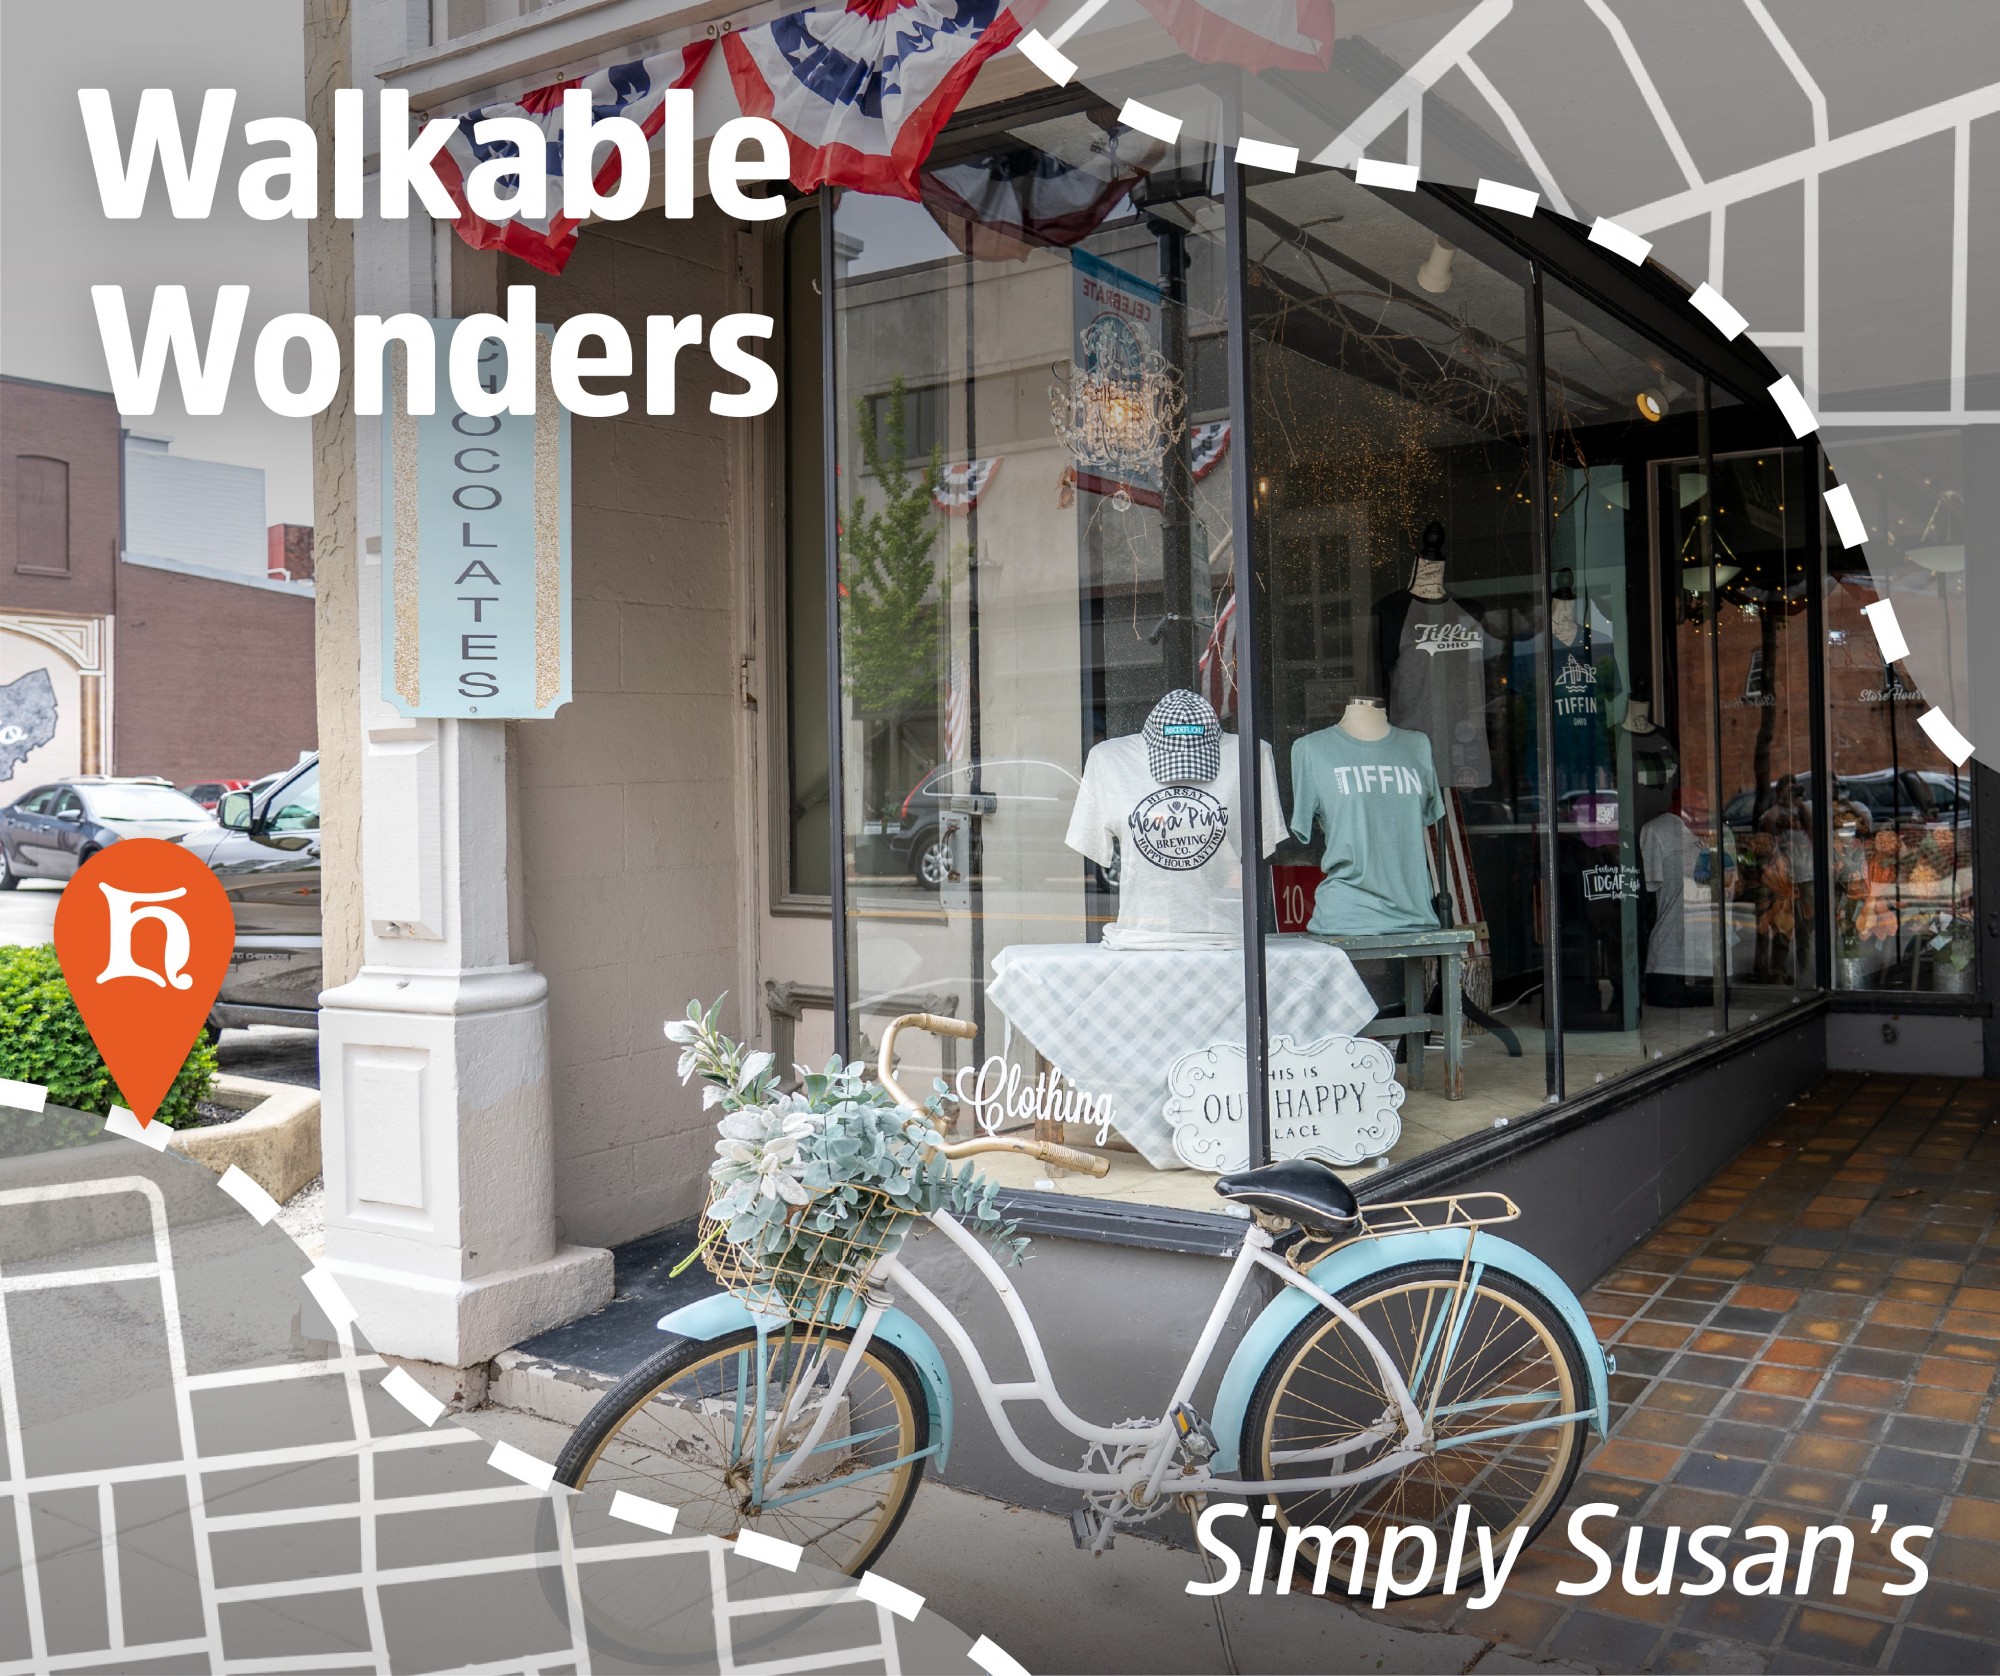 WalkableWonders:  Simply Susan's